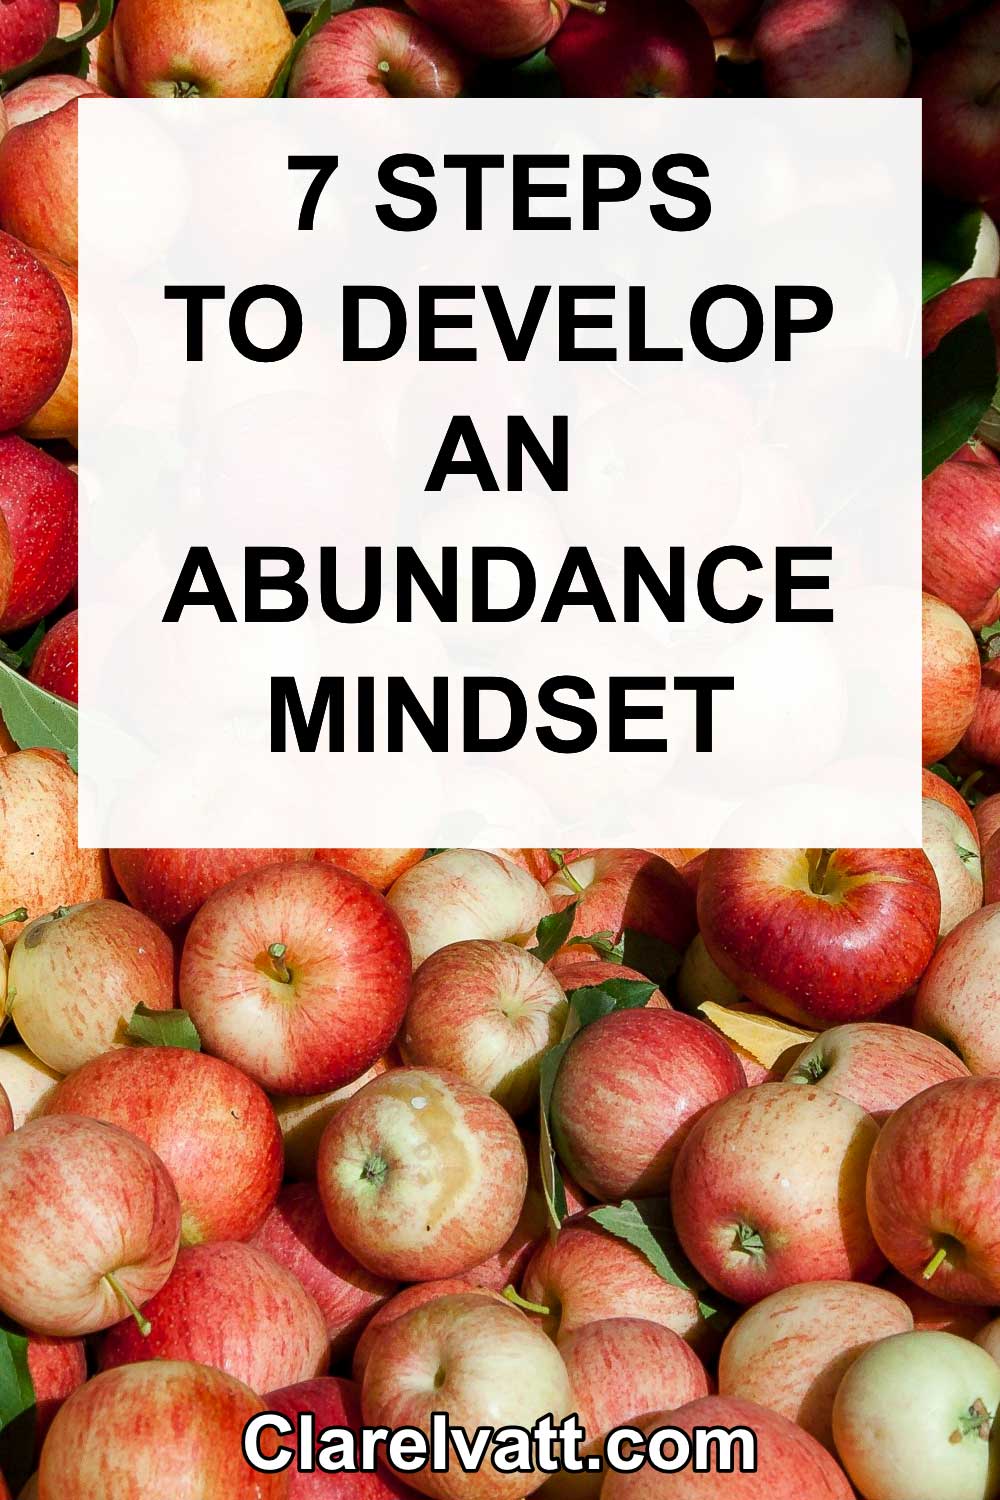 7 Steps to Develop an Abundance Mindset